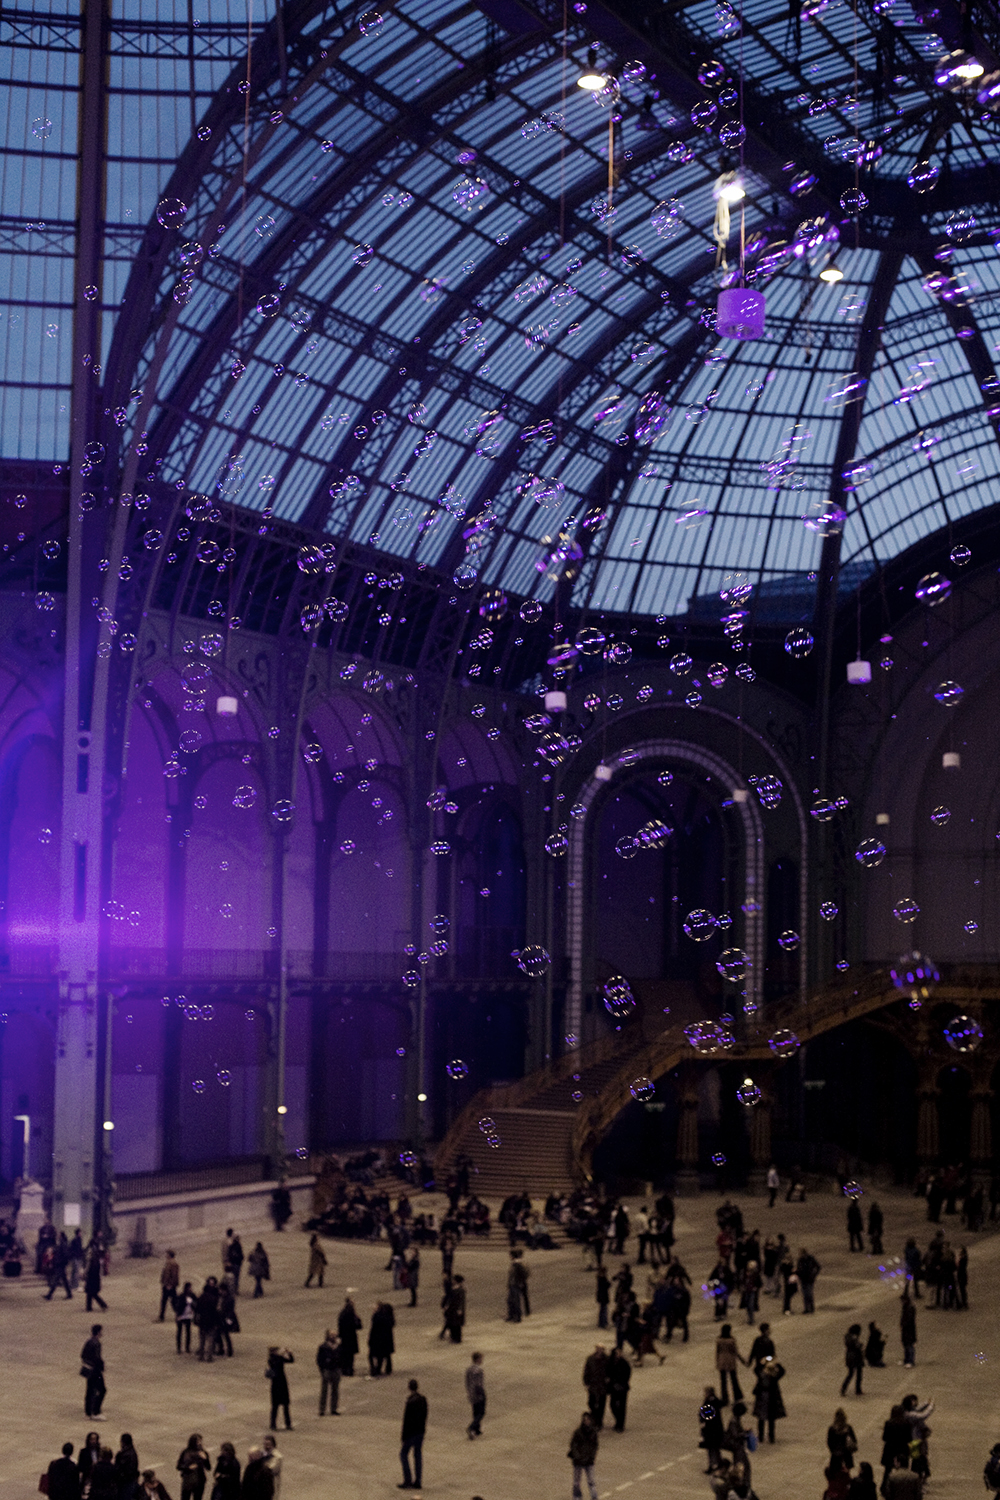  Installation olfactive Francis Kurkdjian - Grand Palais Paris 